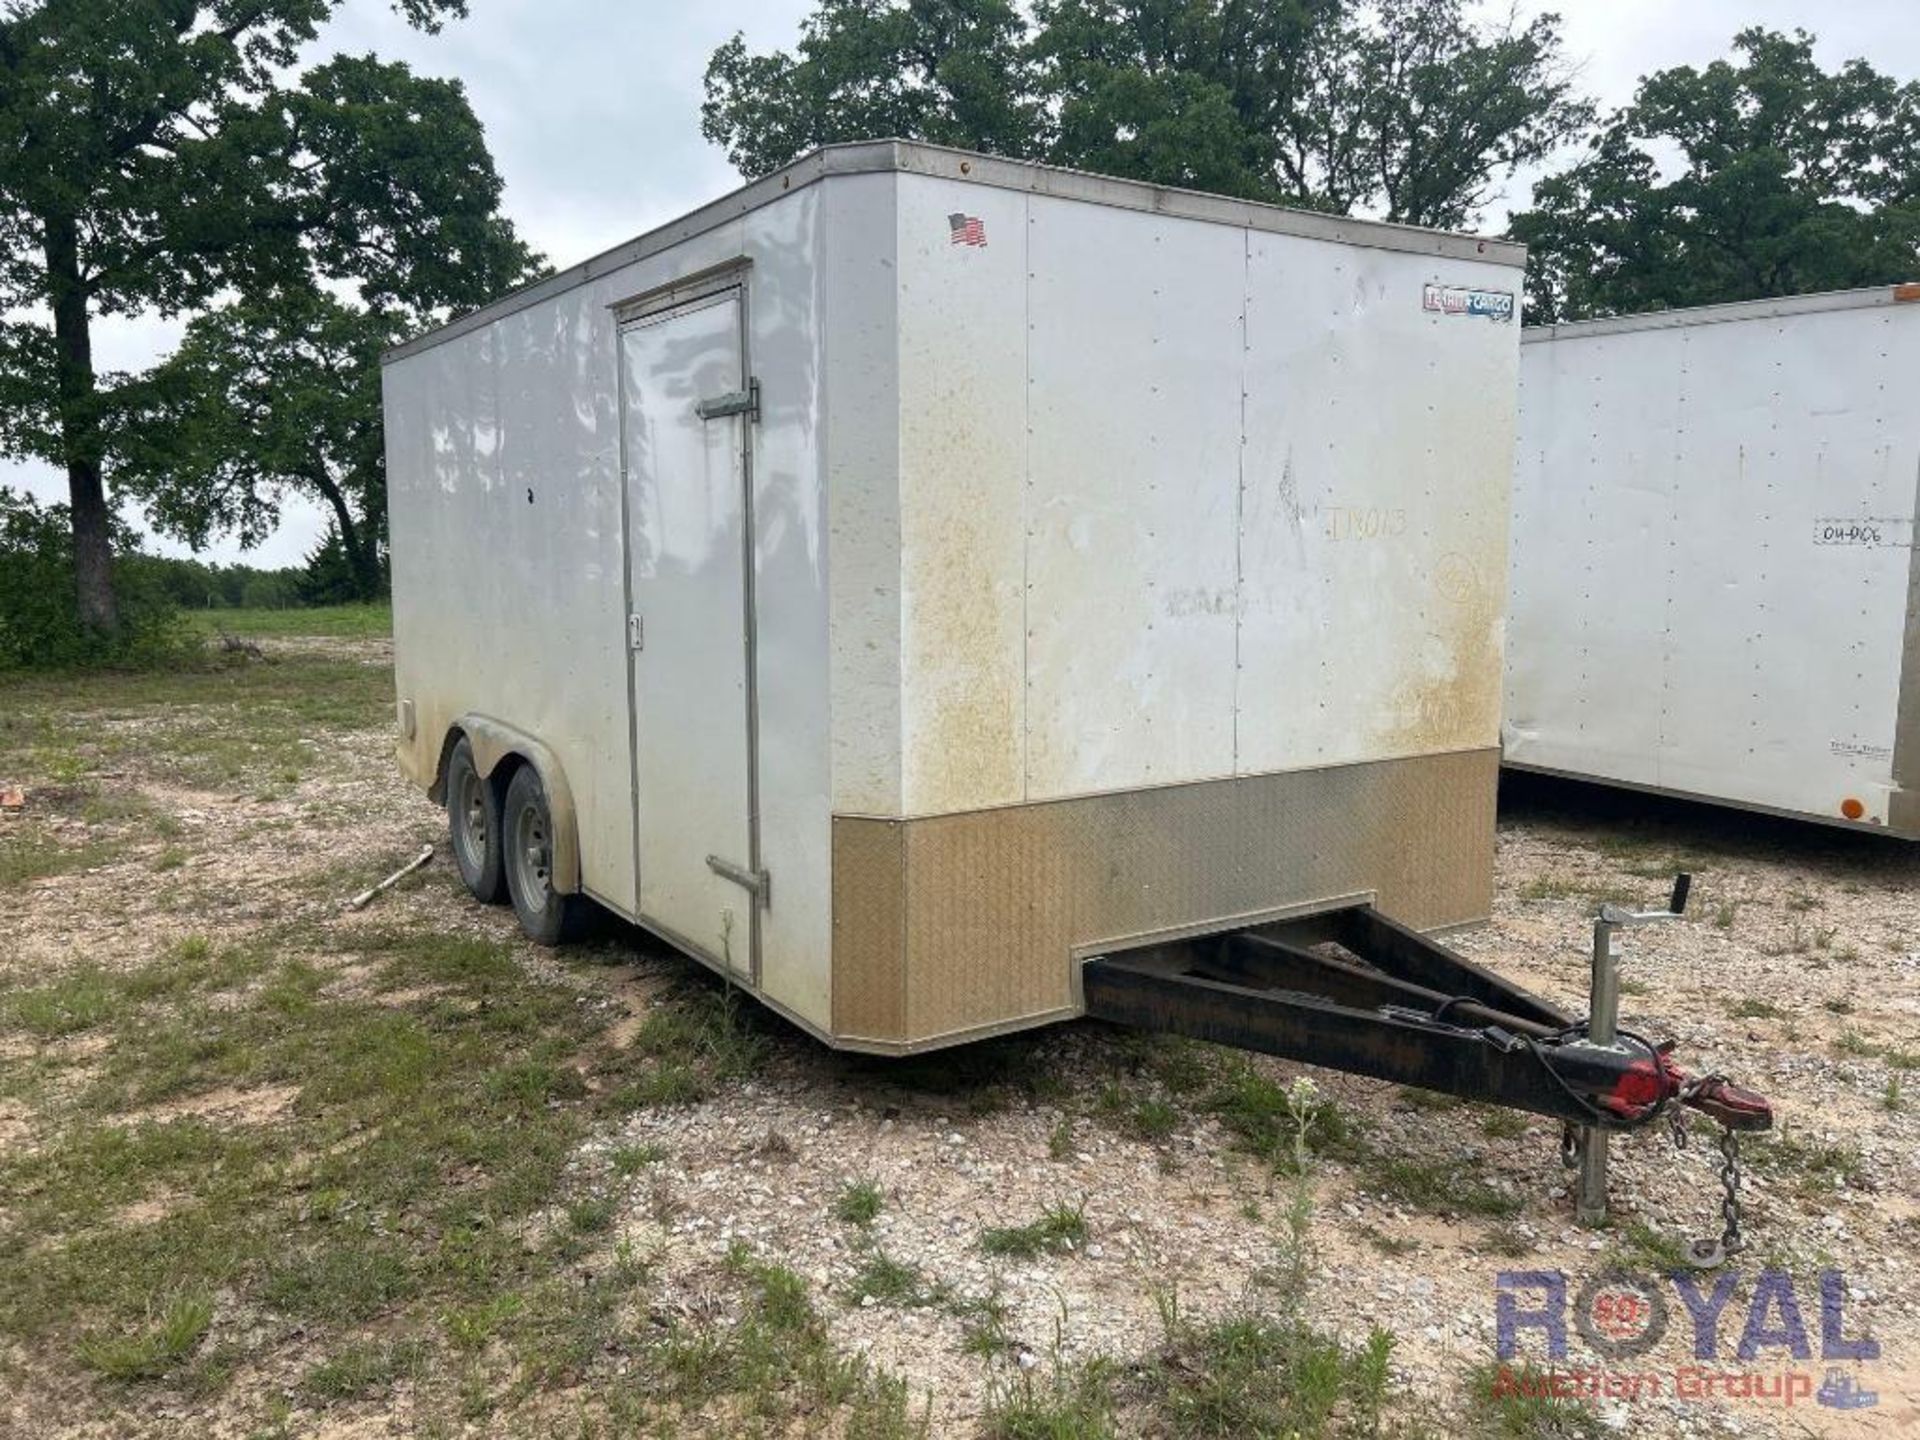 16ft. Texan cargo box trailer